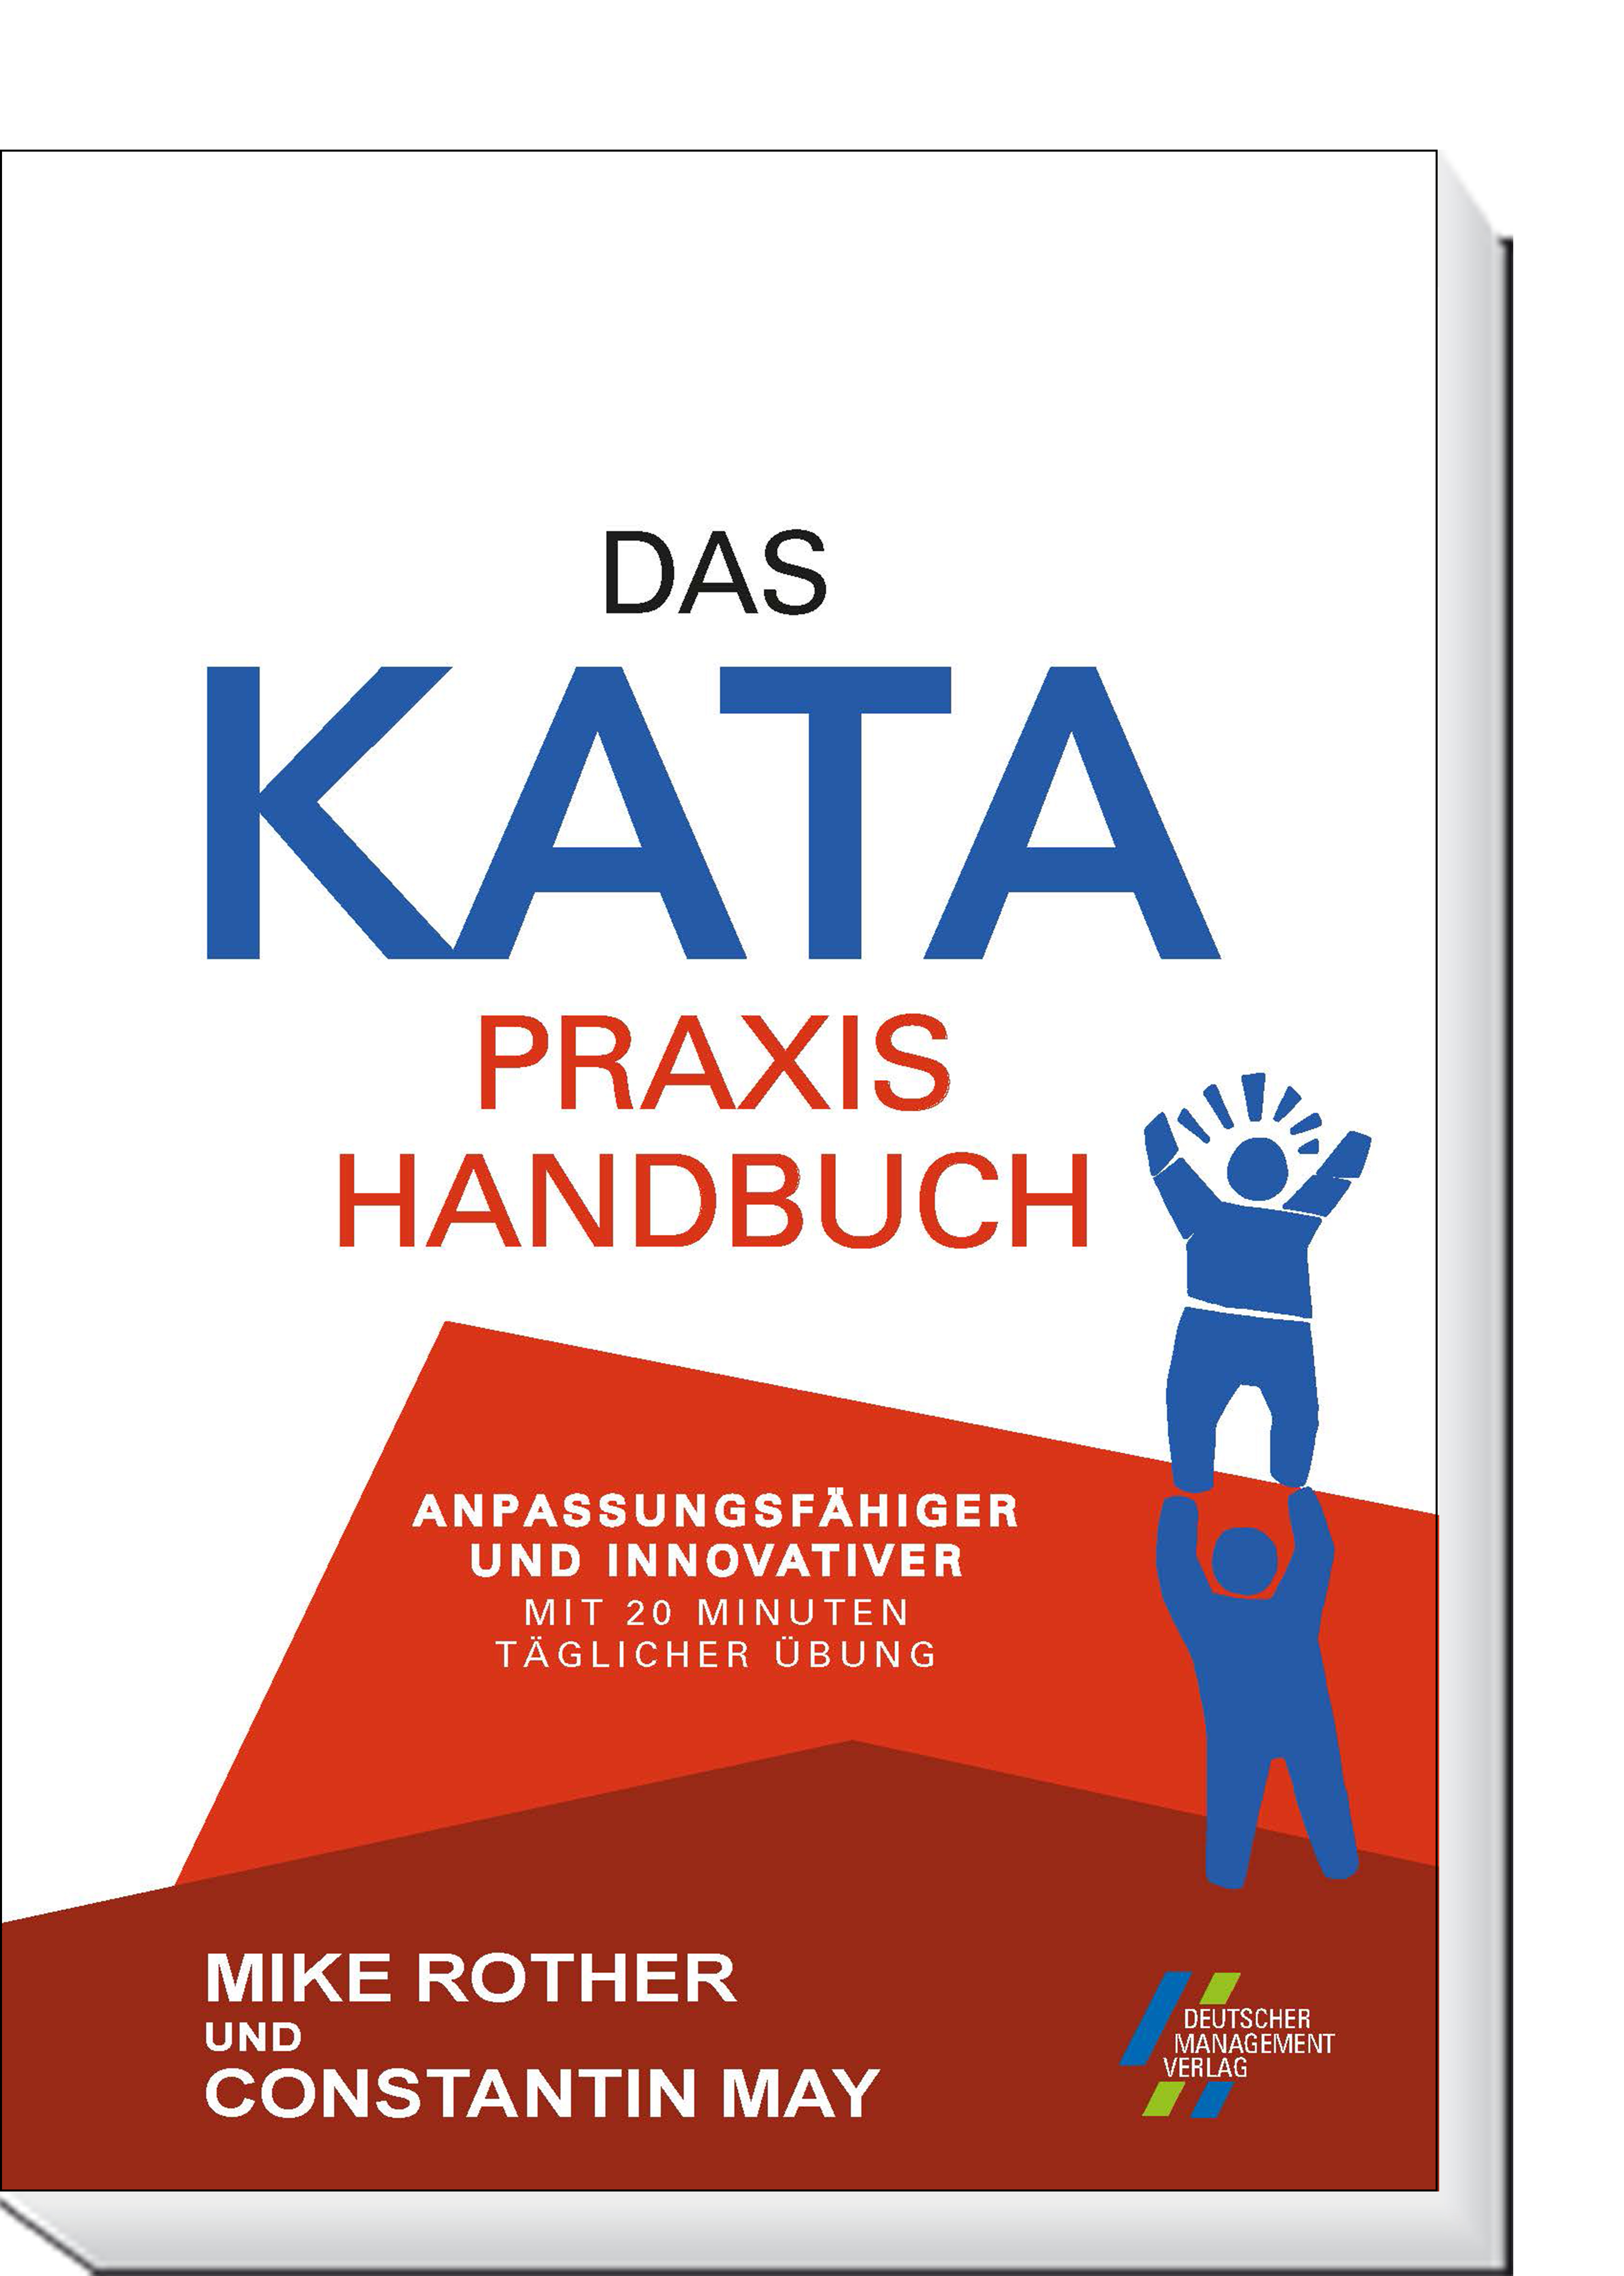 Das KATA Praxishandbuch | täglicher Minuten mit und innovativer CETPM Anpassungsfähiger Übung 20 